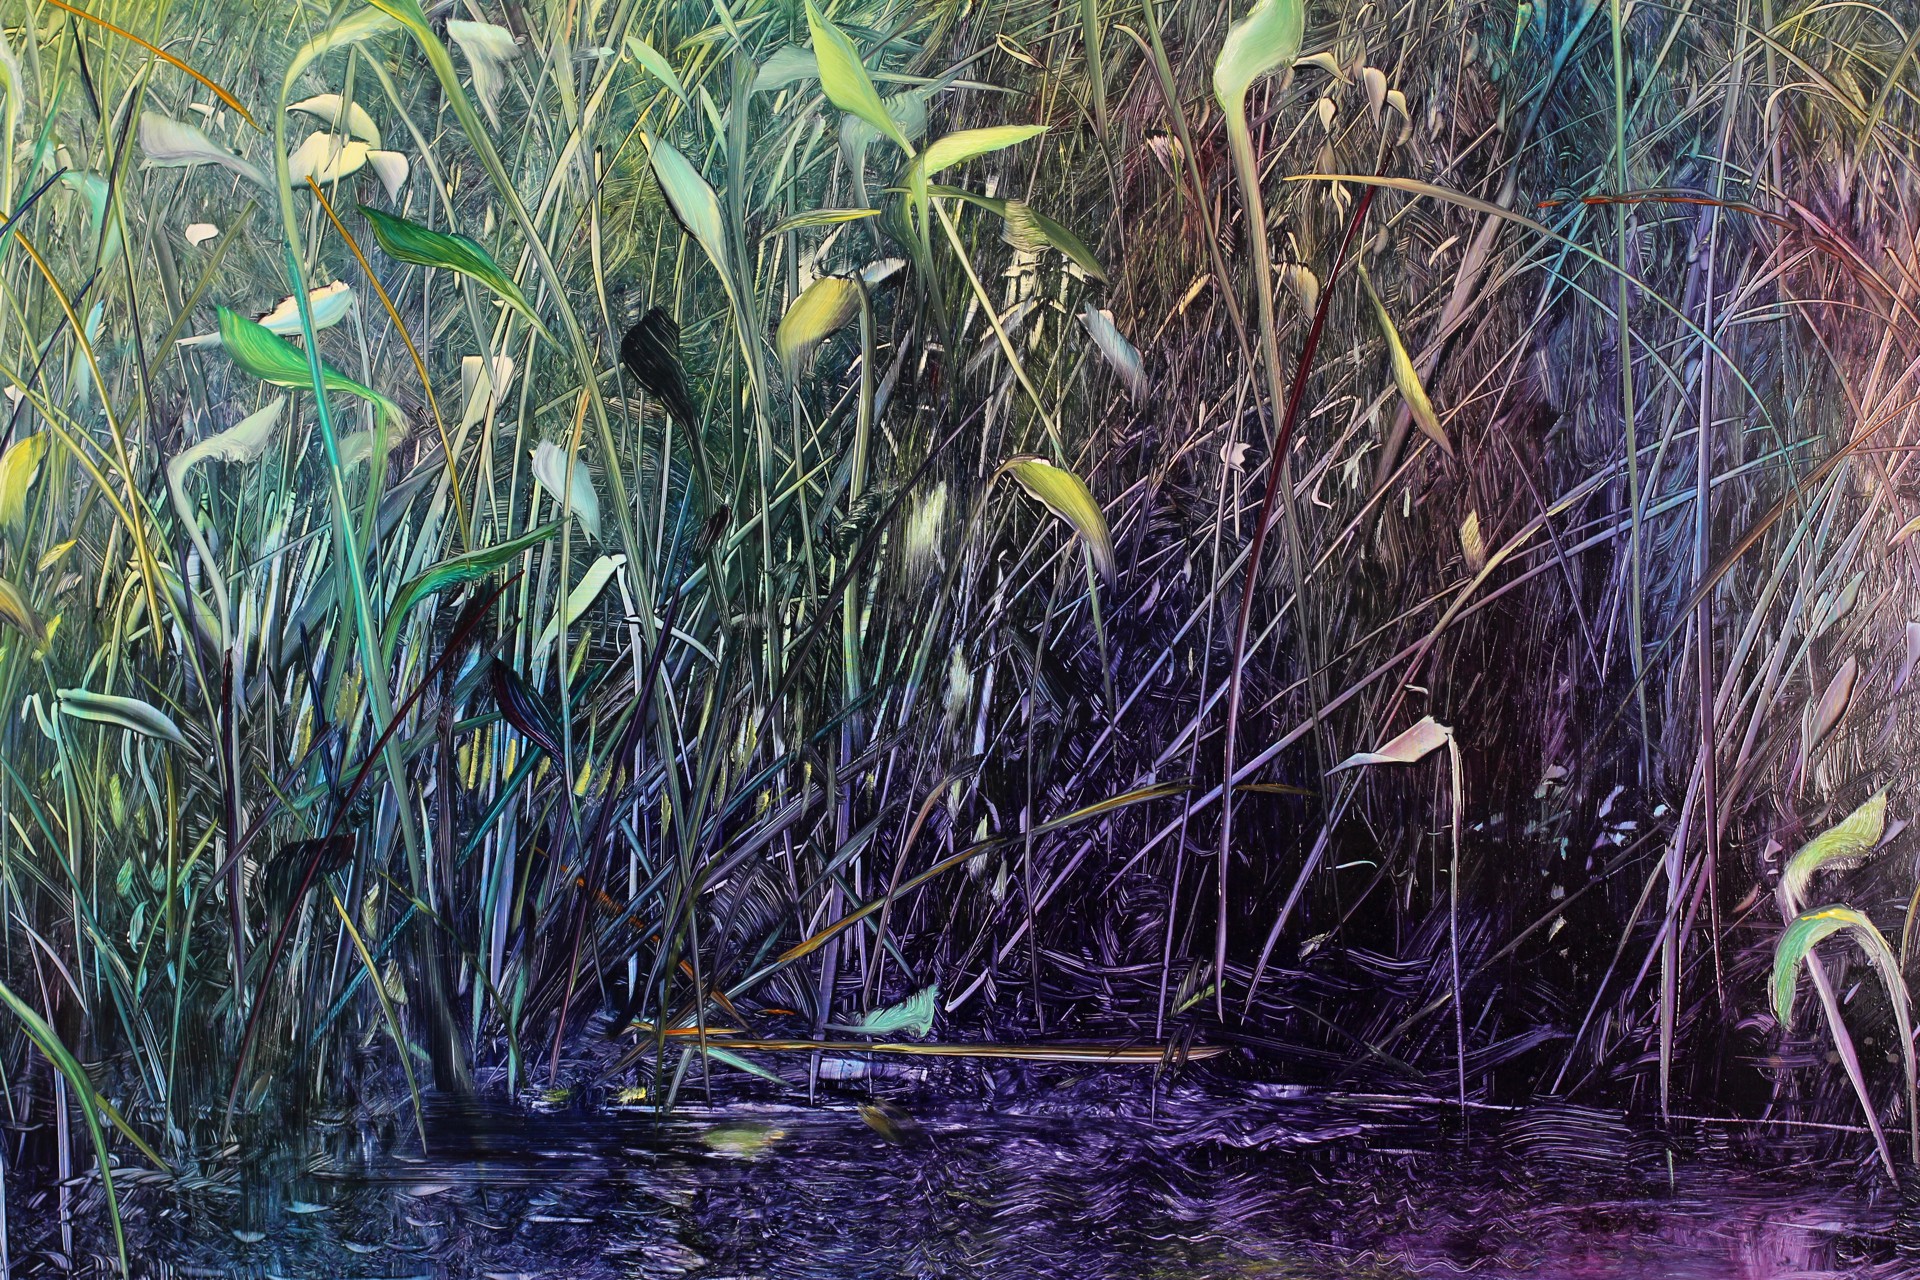 Pond Life by David Allen Dunlop